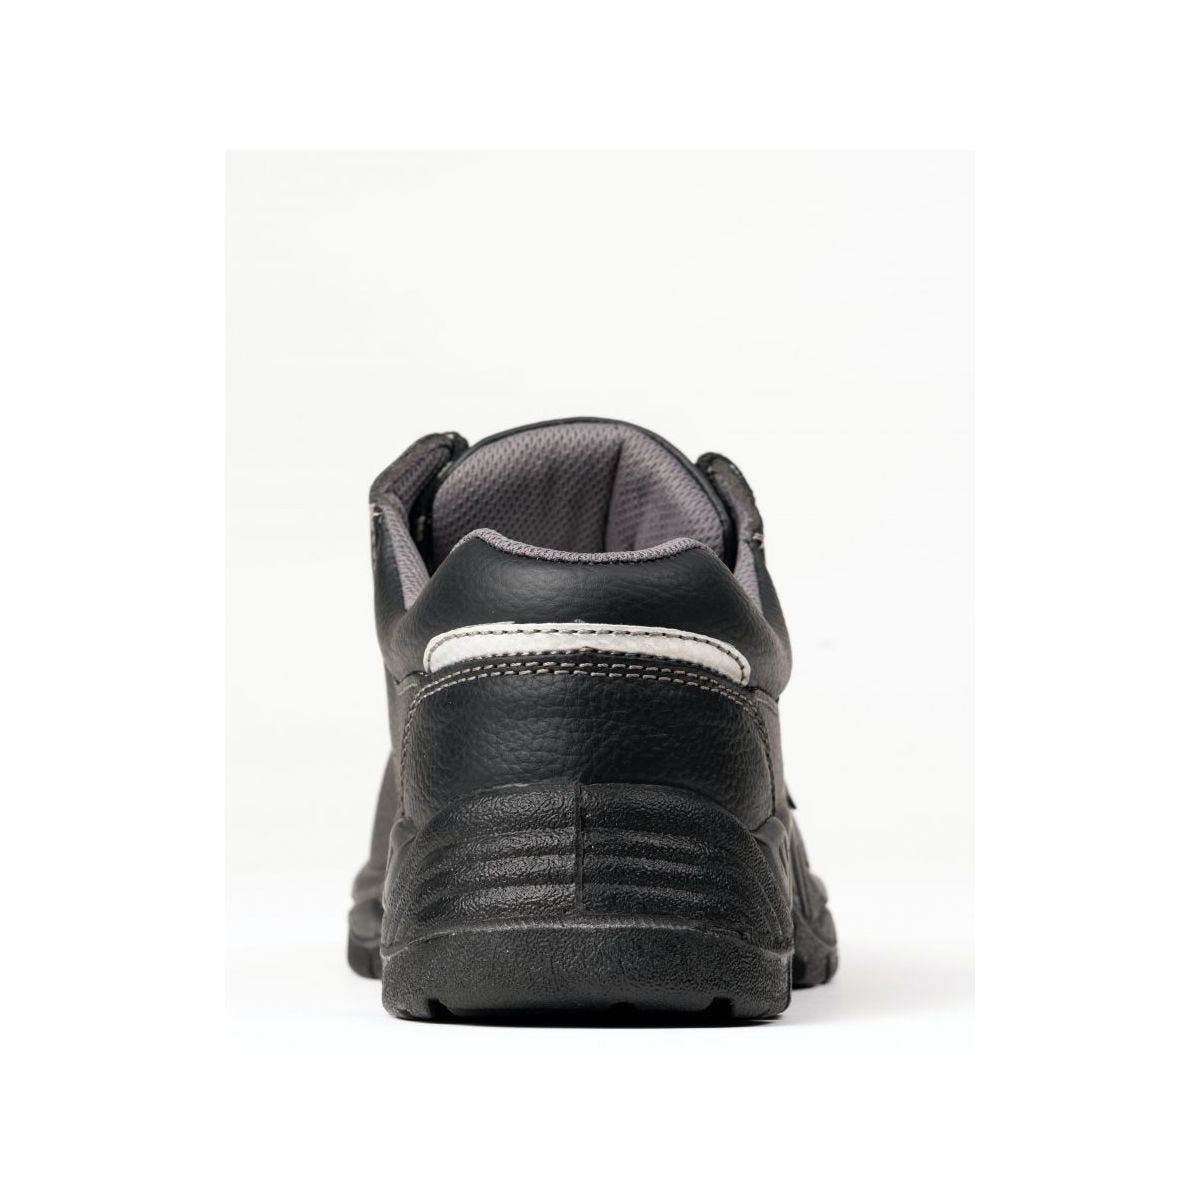 Chaussures de sécurité basses AGATE II S3 Noir - Coverguard - Taille 49 2